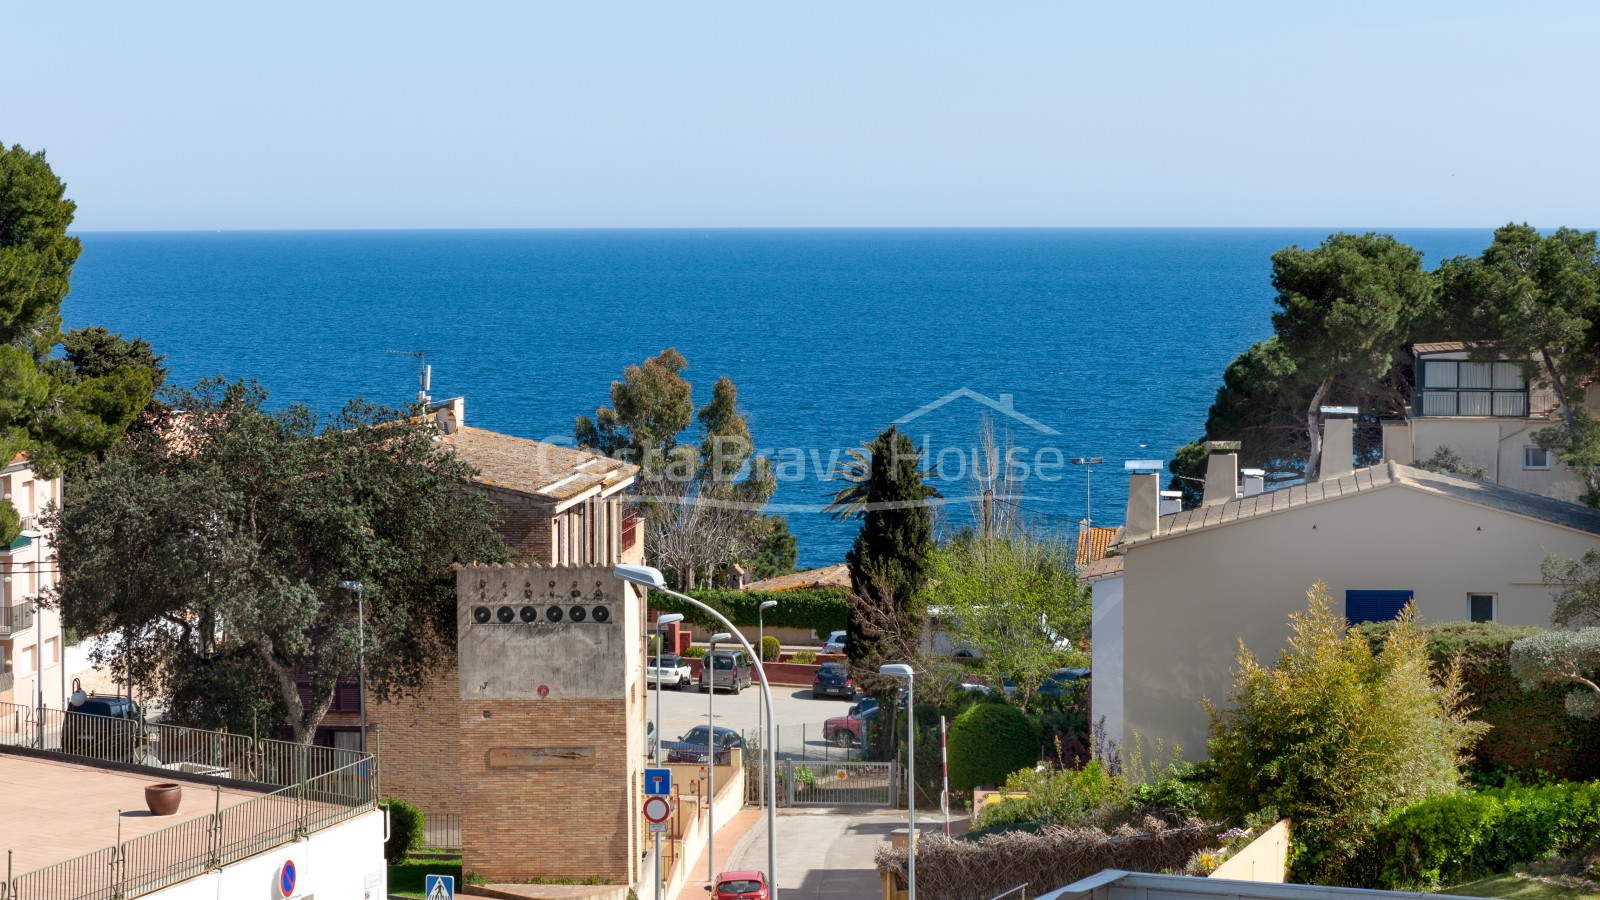 Apartamento con vista mar en venta en Calella Palafrugell, a 250 m de la playa del Port Pelegrí